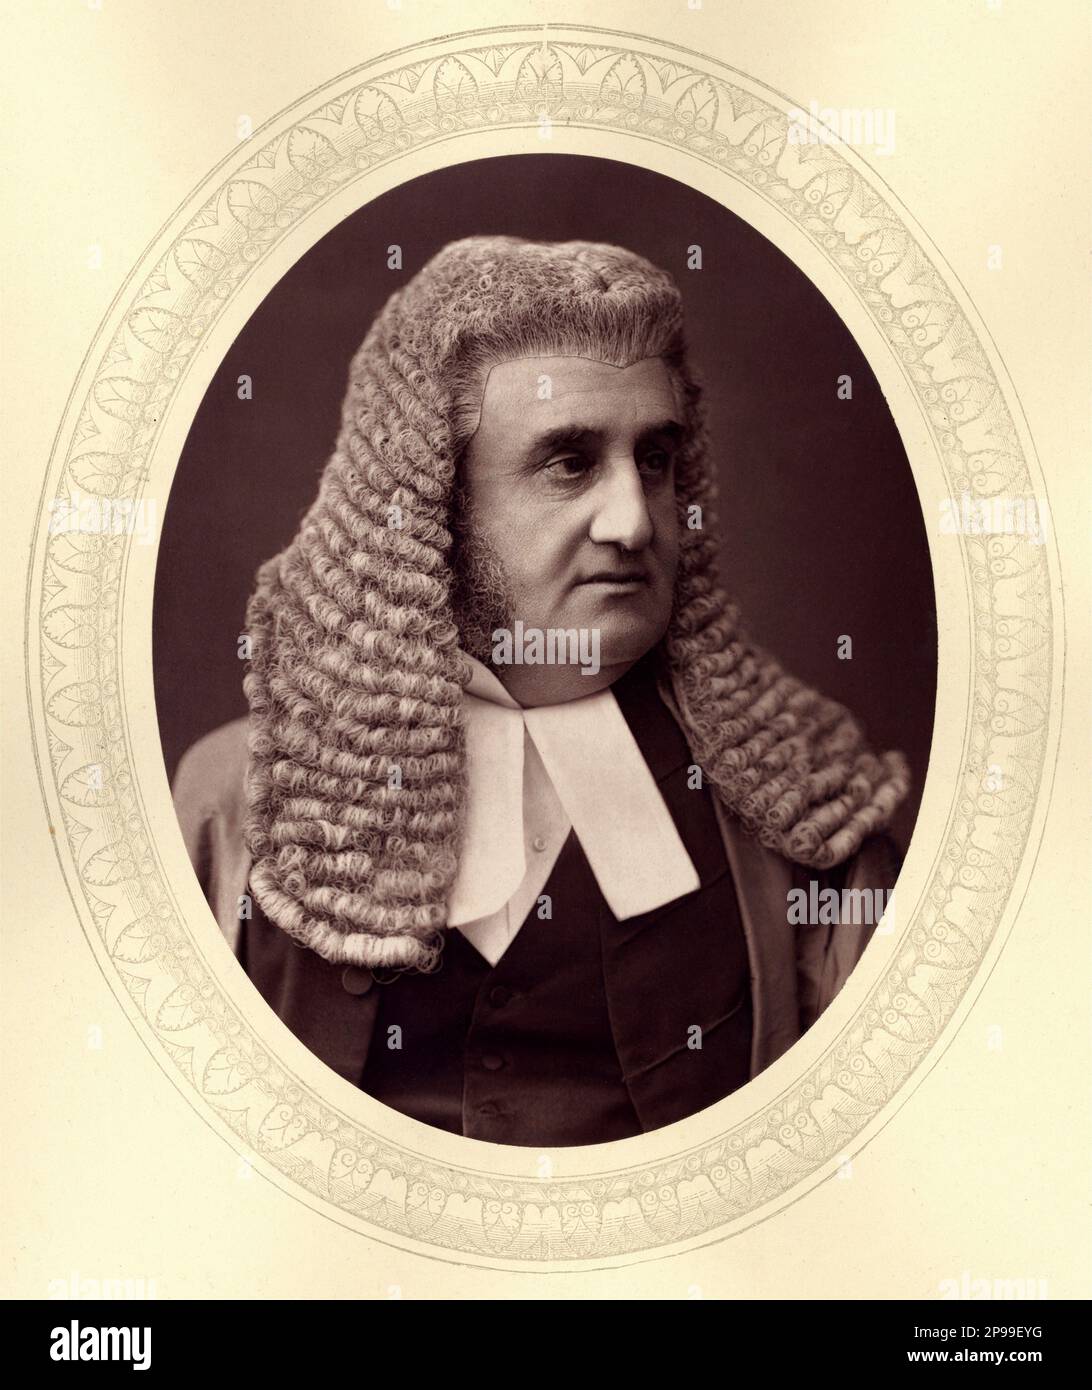 The british judge Baronet Hon. Sir ROBERT JOSEPH PHILLIMORE ( 1810 - 1885 )  - GIUDICE   - portrait - ritratto  - collar - colletto - uomo anziano vecchio - older man  - nobili inglese - GREAT BRITAIN - nobility - Nobiltà  - baronetto - wig - parrucca - basette  ----   Archivio GBB Stock Photo